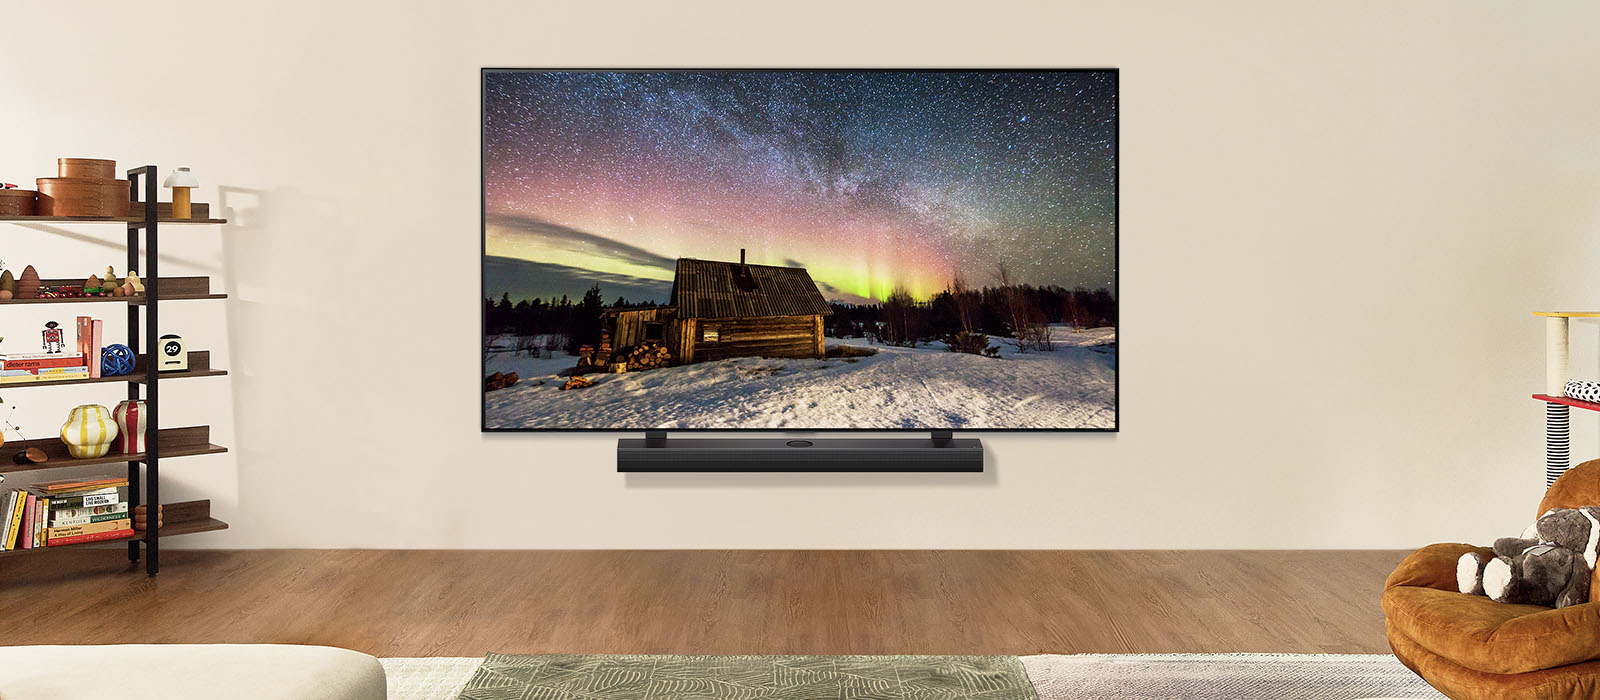 LG TV وLG Soundbar في غرفة معيشة عصرية خلال النهار. صورة الشفق القطبي تظهر على الشاشة بمستويات السطوع المثالية.